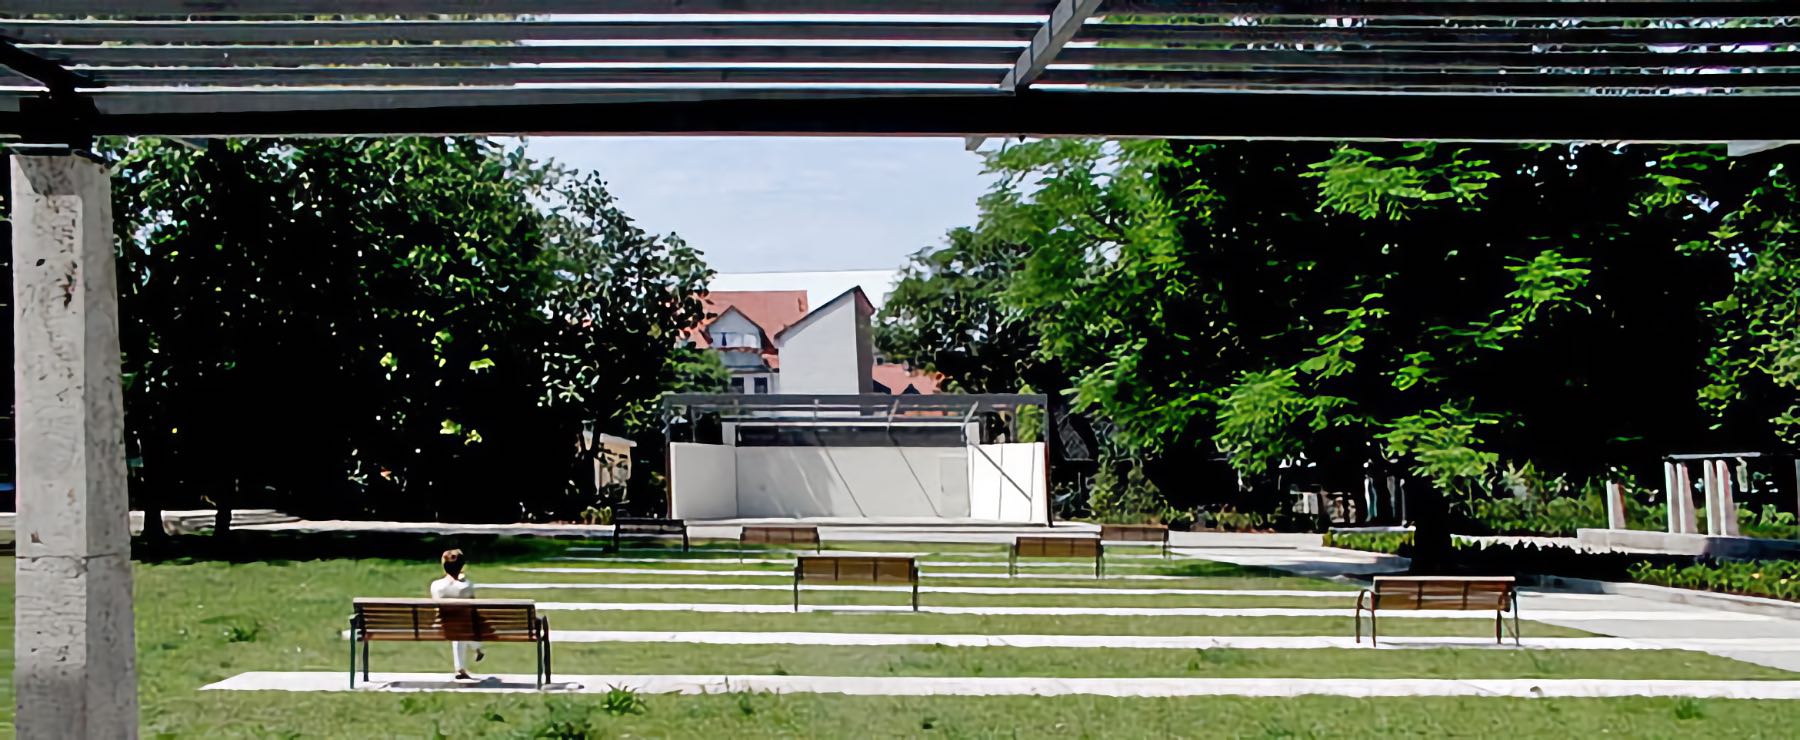 Konzertpavillon Brühler Garten, Erfurt